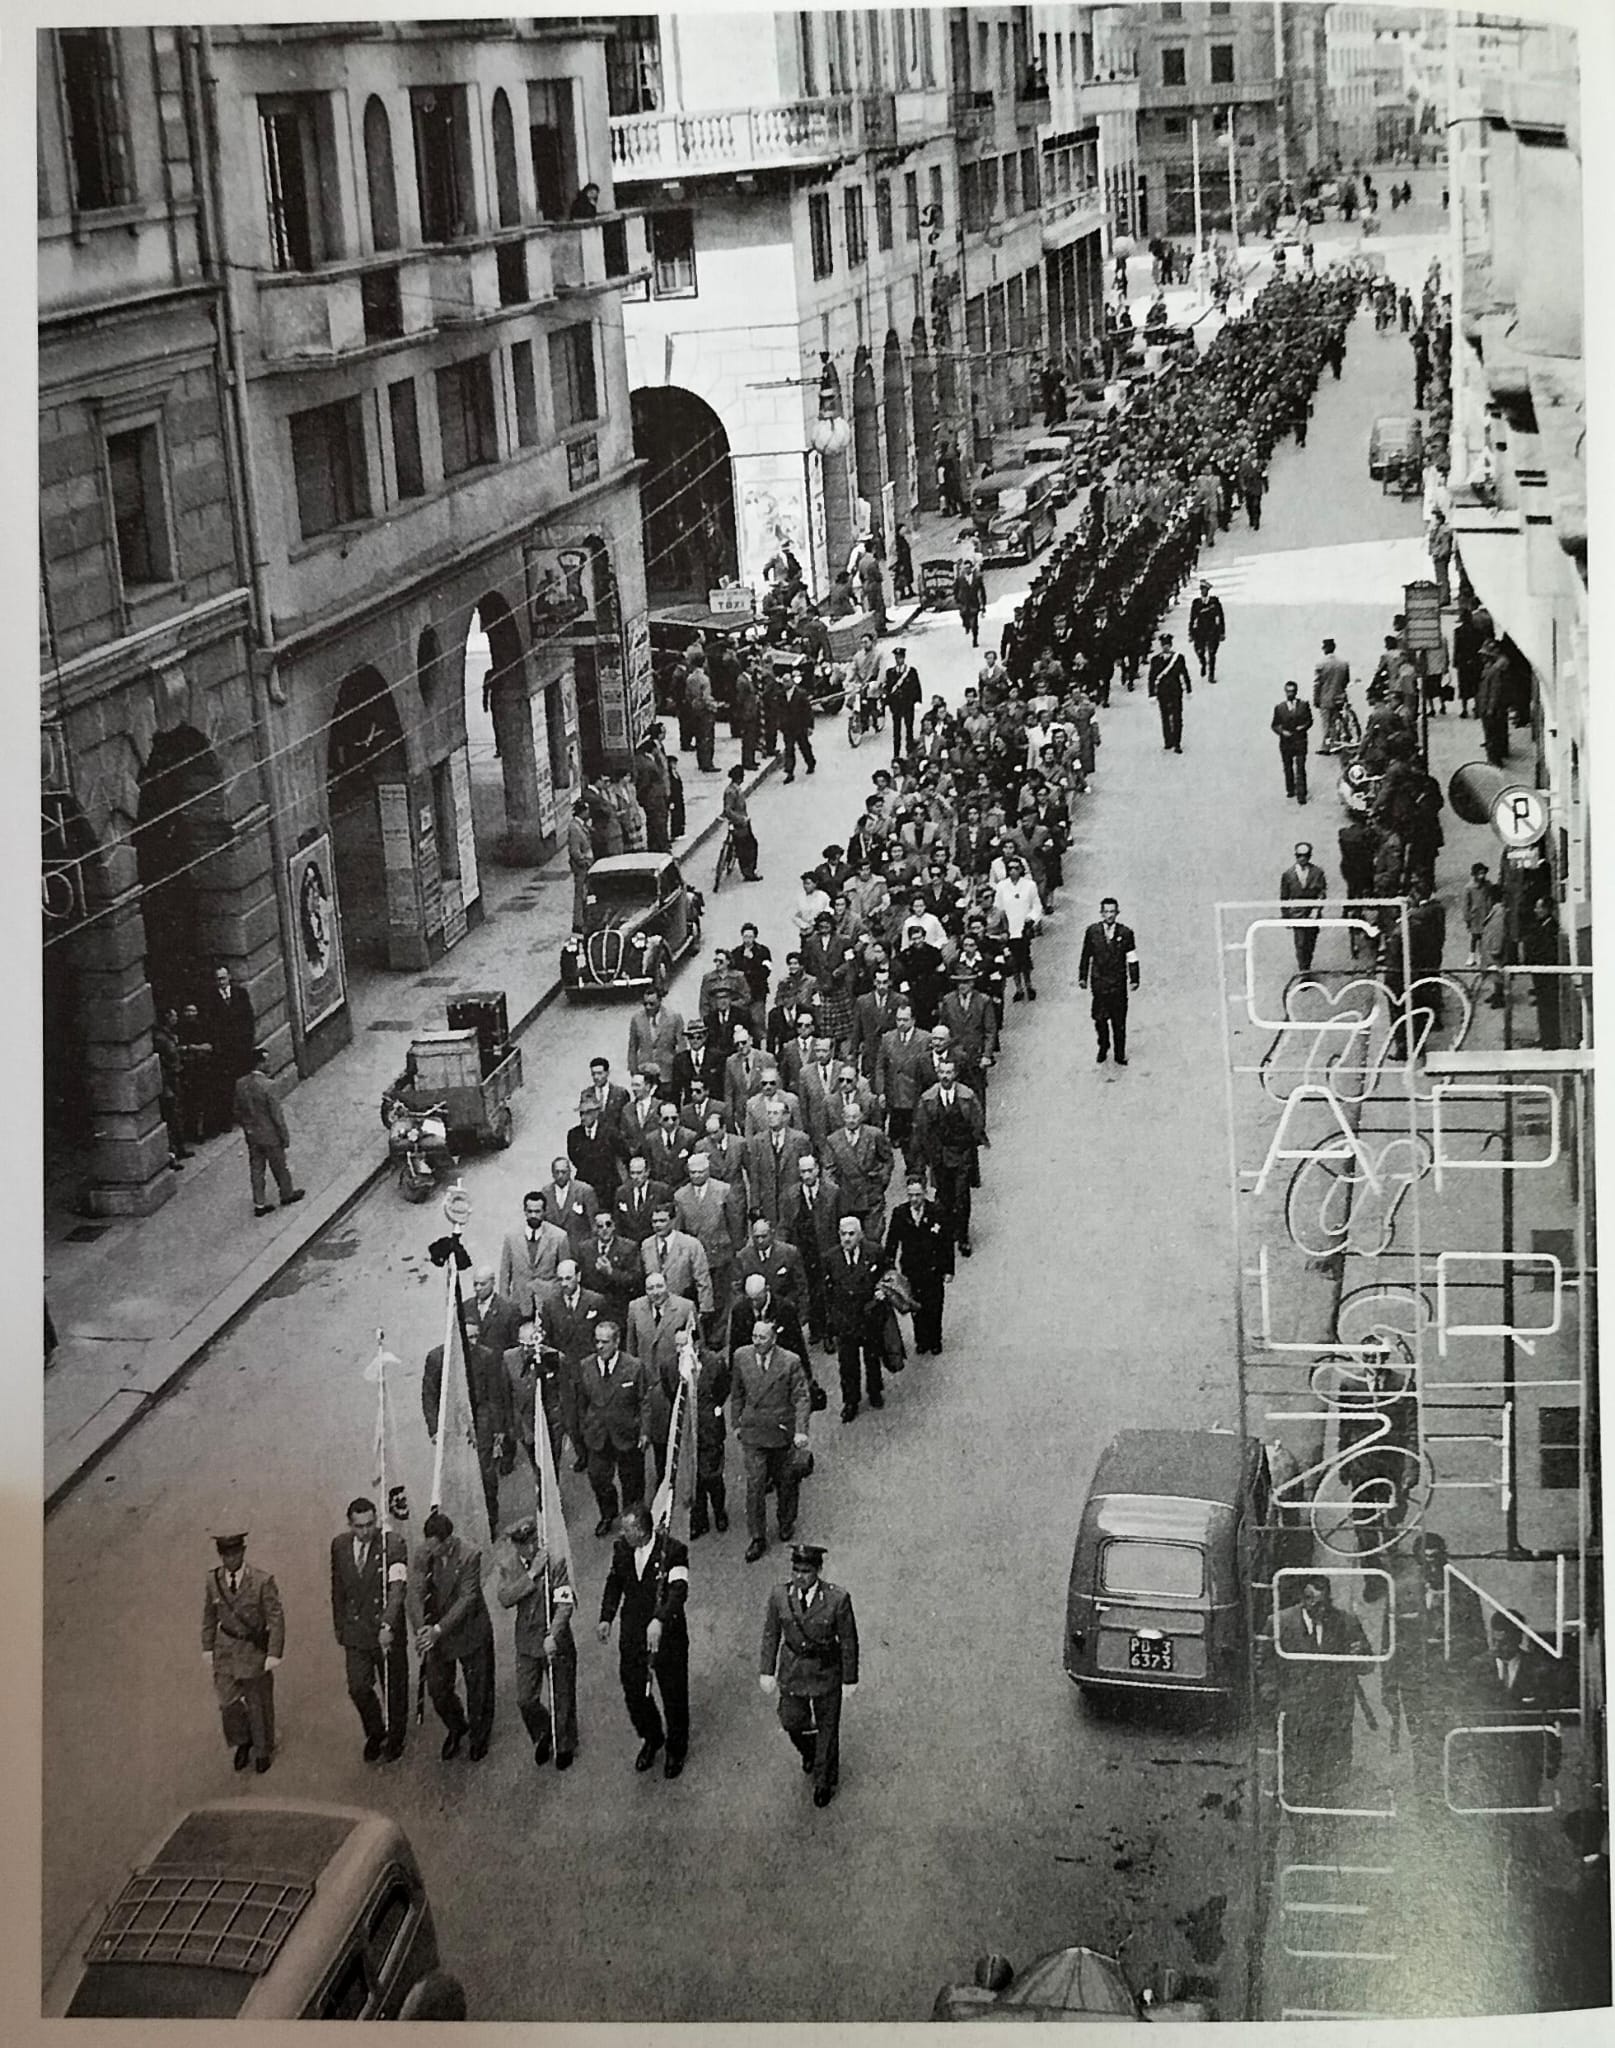 Sfilata nel centro di Padova dei delegati partecipanti al congresso nazionale delle pubbliche assistenze, novembre 1950.